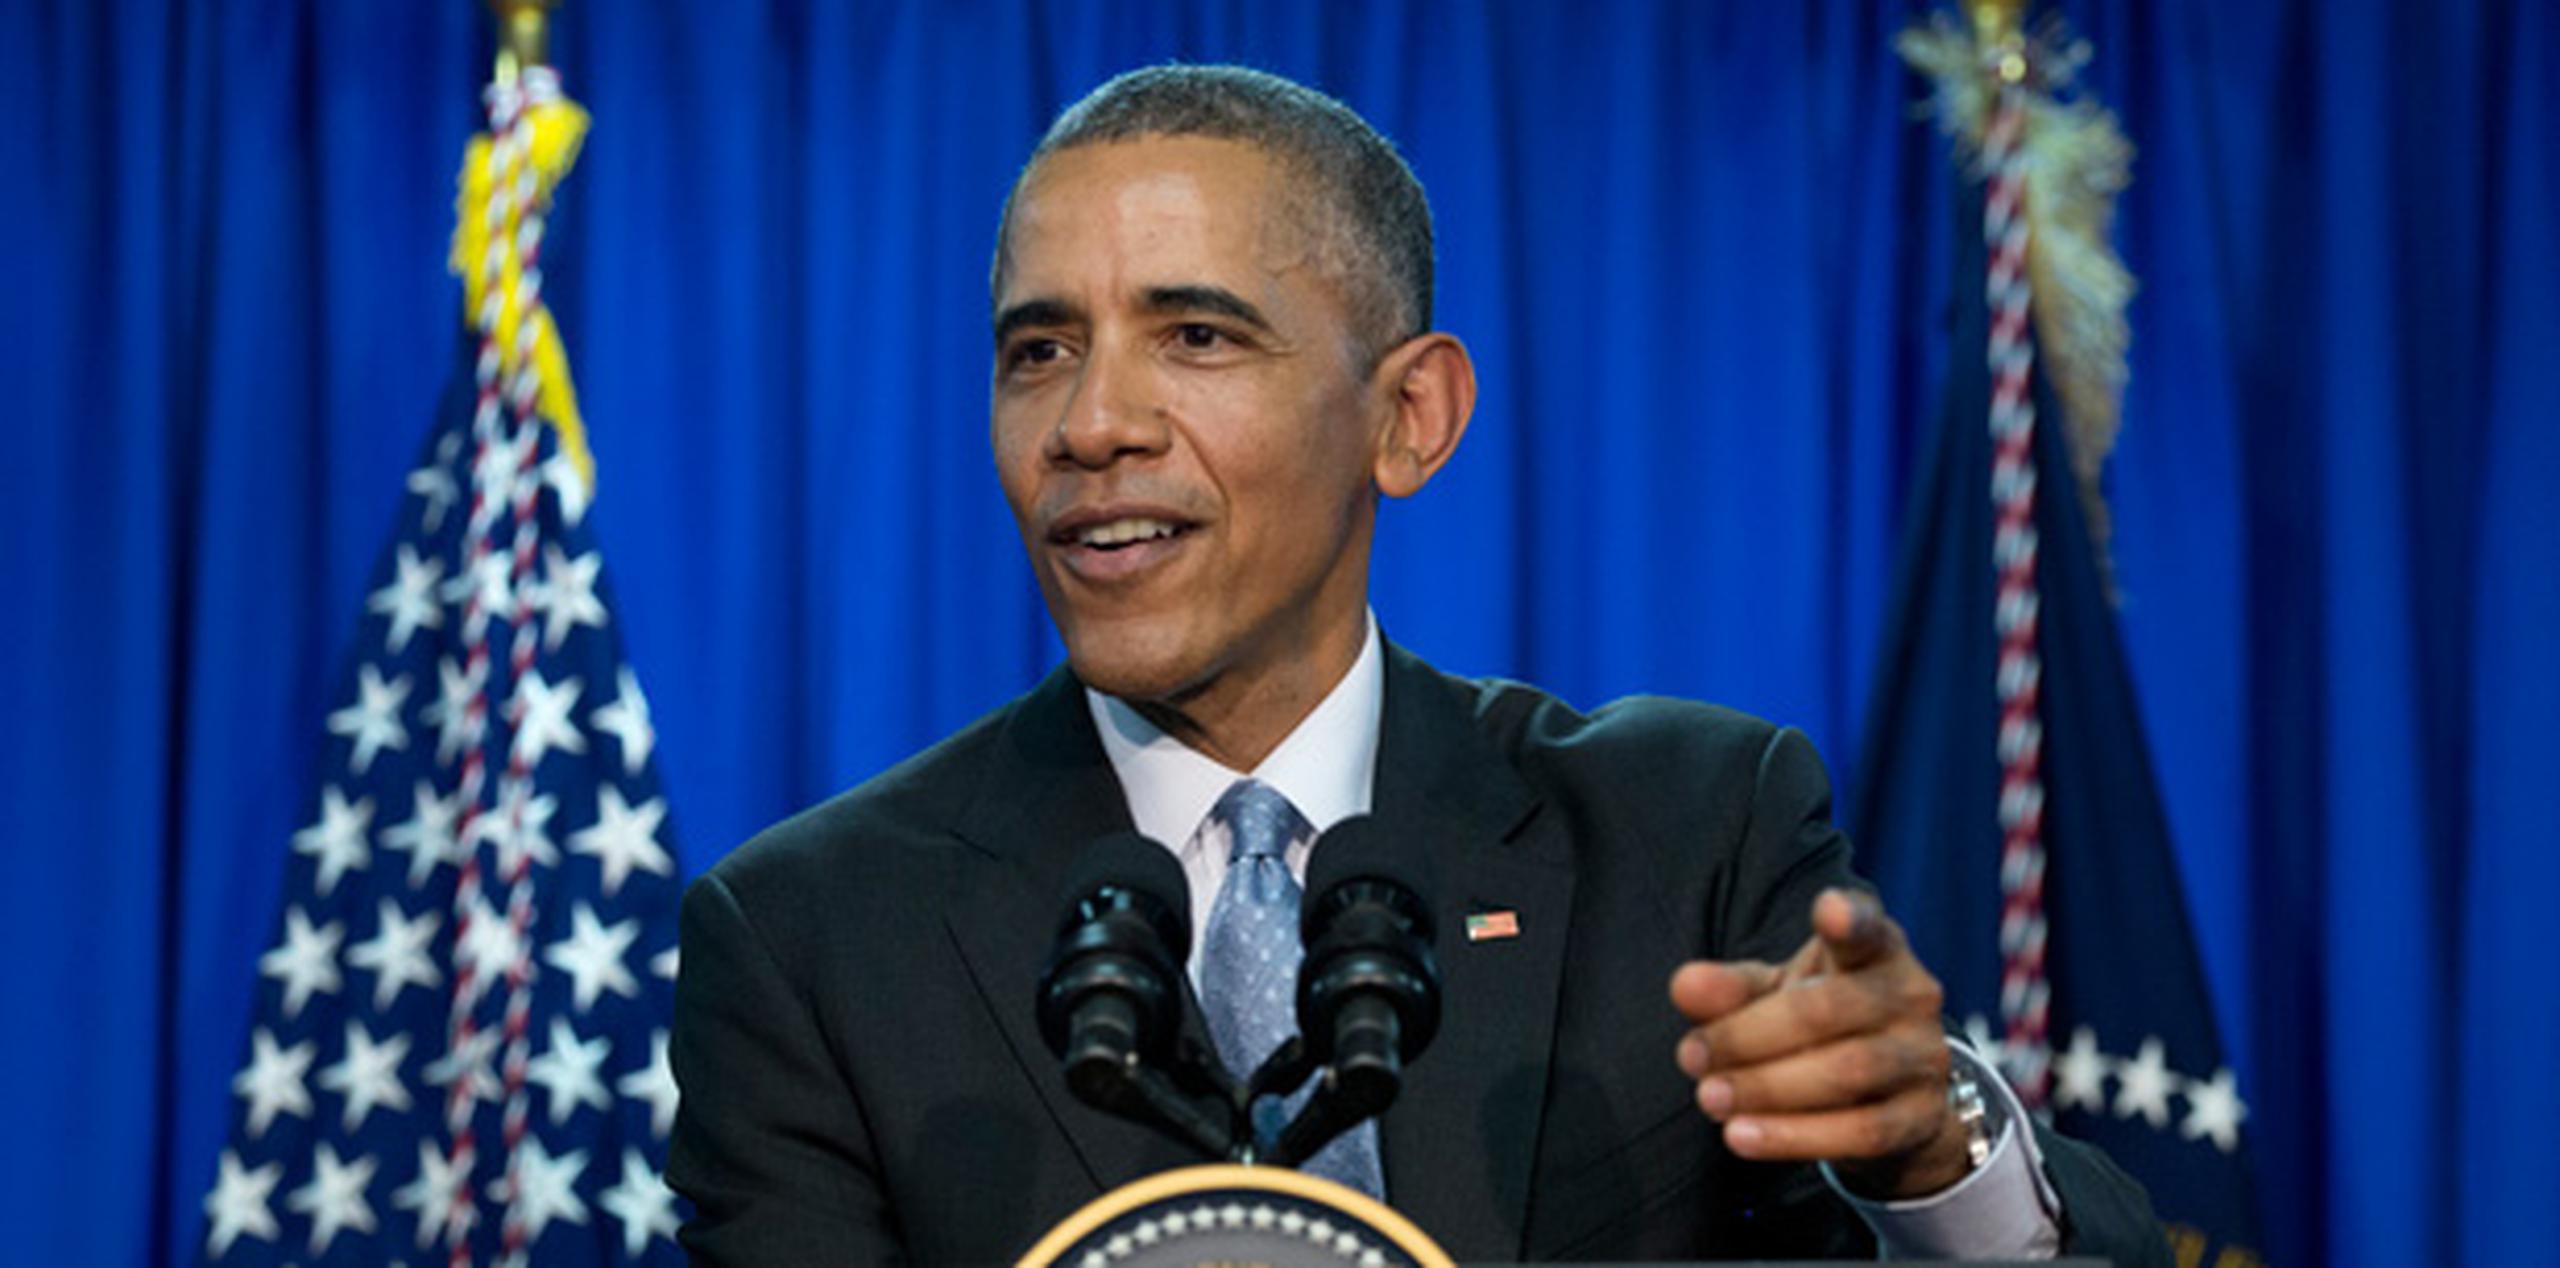 Obama habló sobre la campaña de primarias presidenciales estadounidense durante una conferencia de prensa en Japón. (AP)